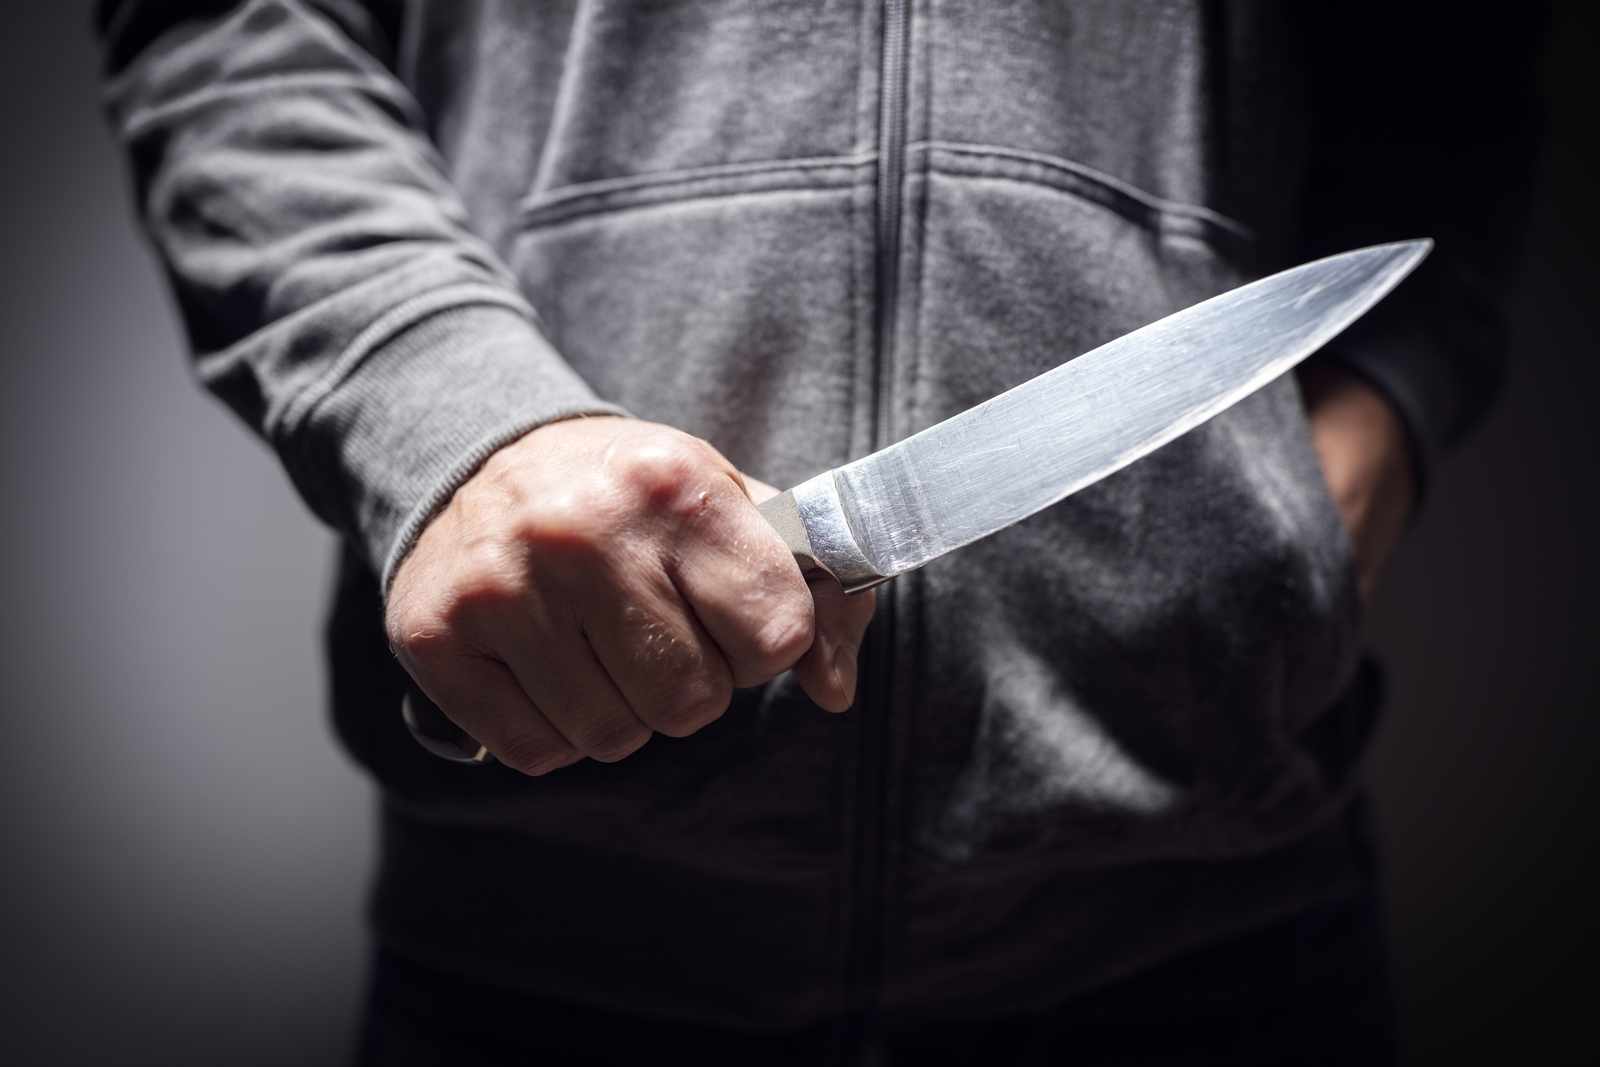 Νεαρός Ρομά κρατούσε μαχαίρι και απειλούσε περαστικούς στο Ηράκλειο